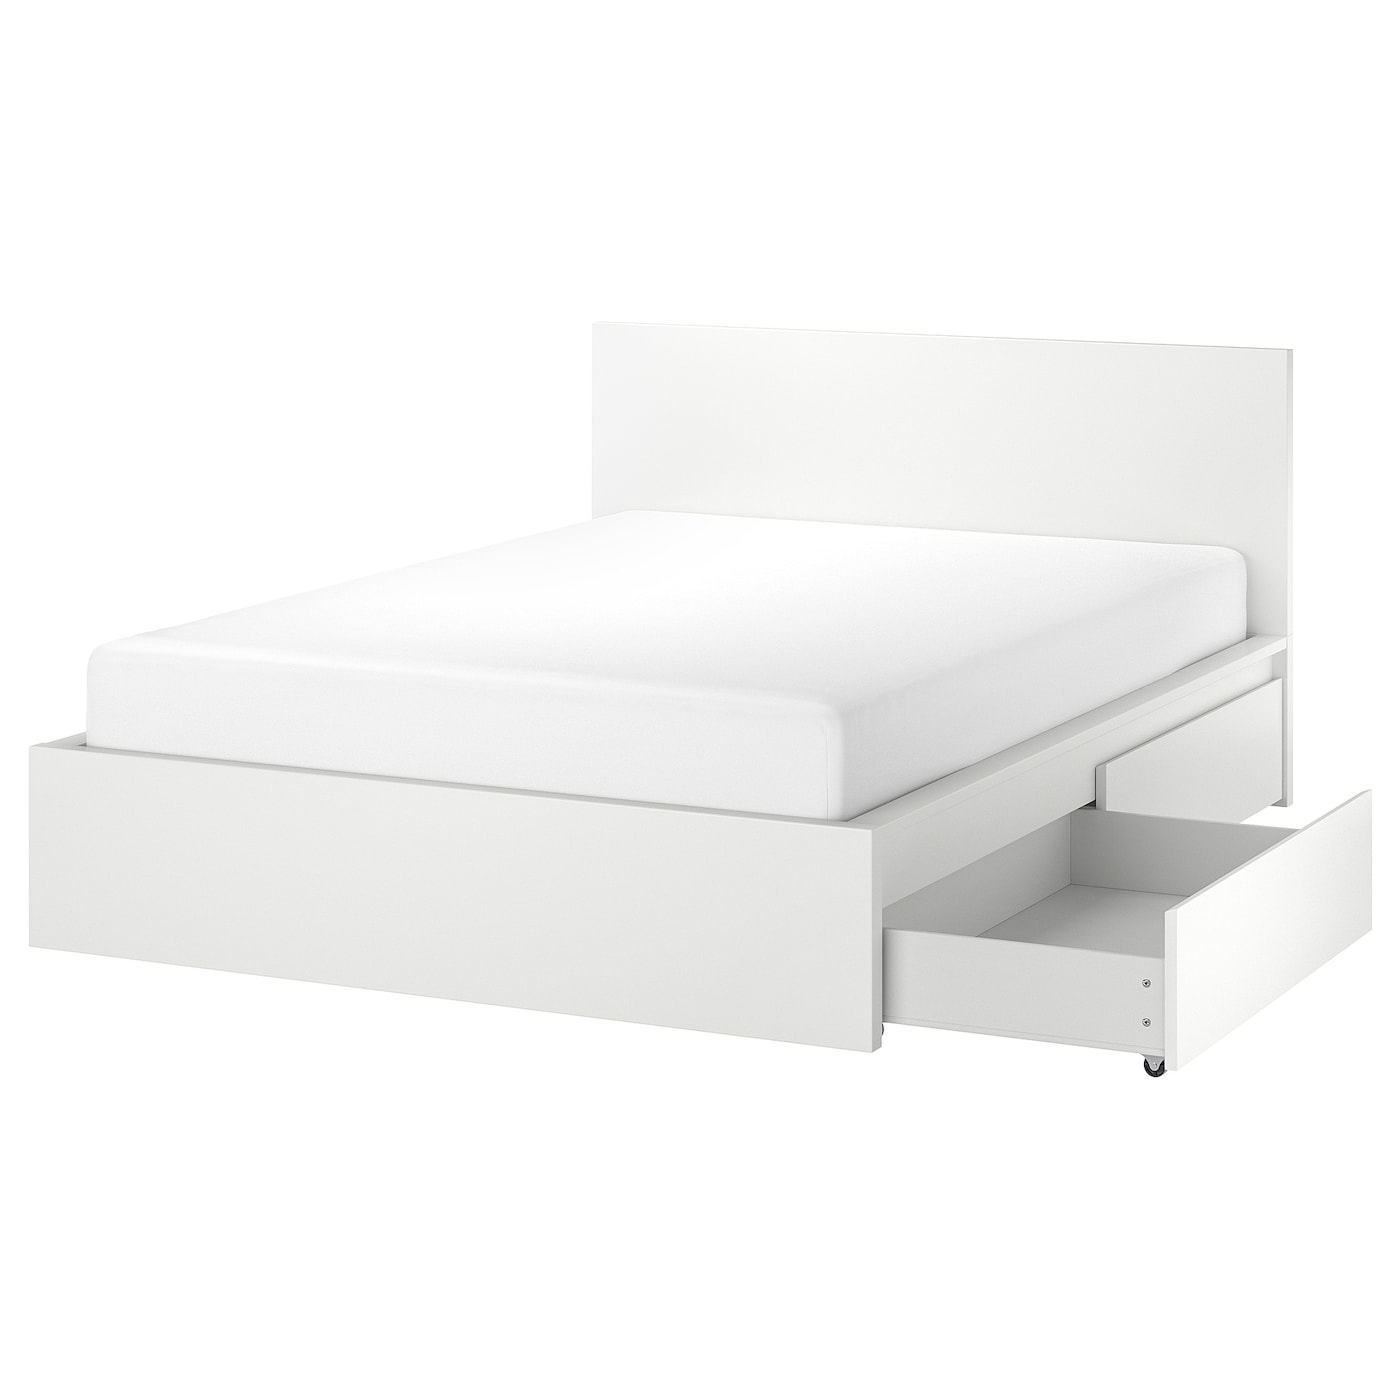 Каркас кровати с 4 ящиками для хранения - IKEA MALM, 200х140 см, белый, МАЛЬМ ИКЕА